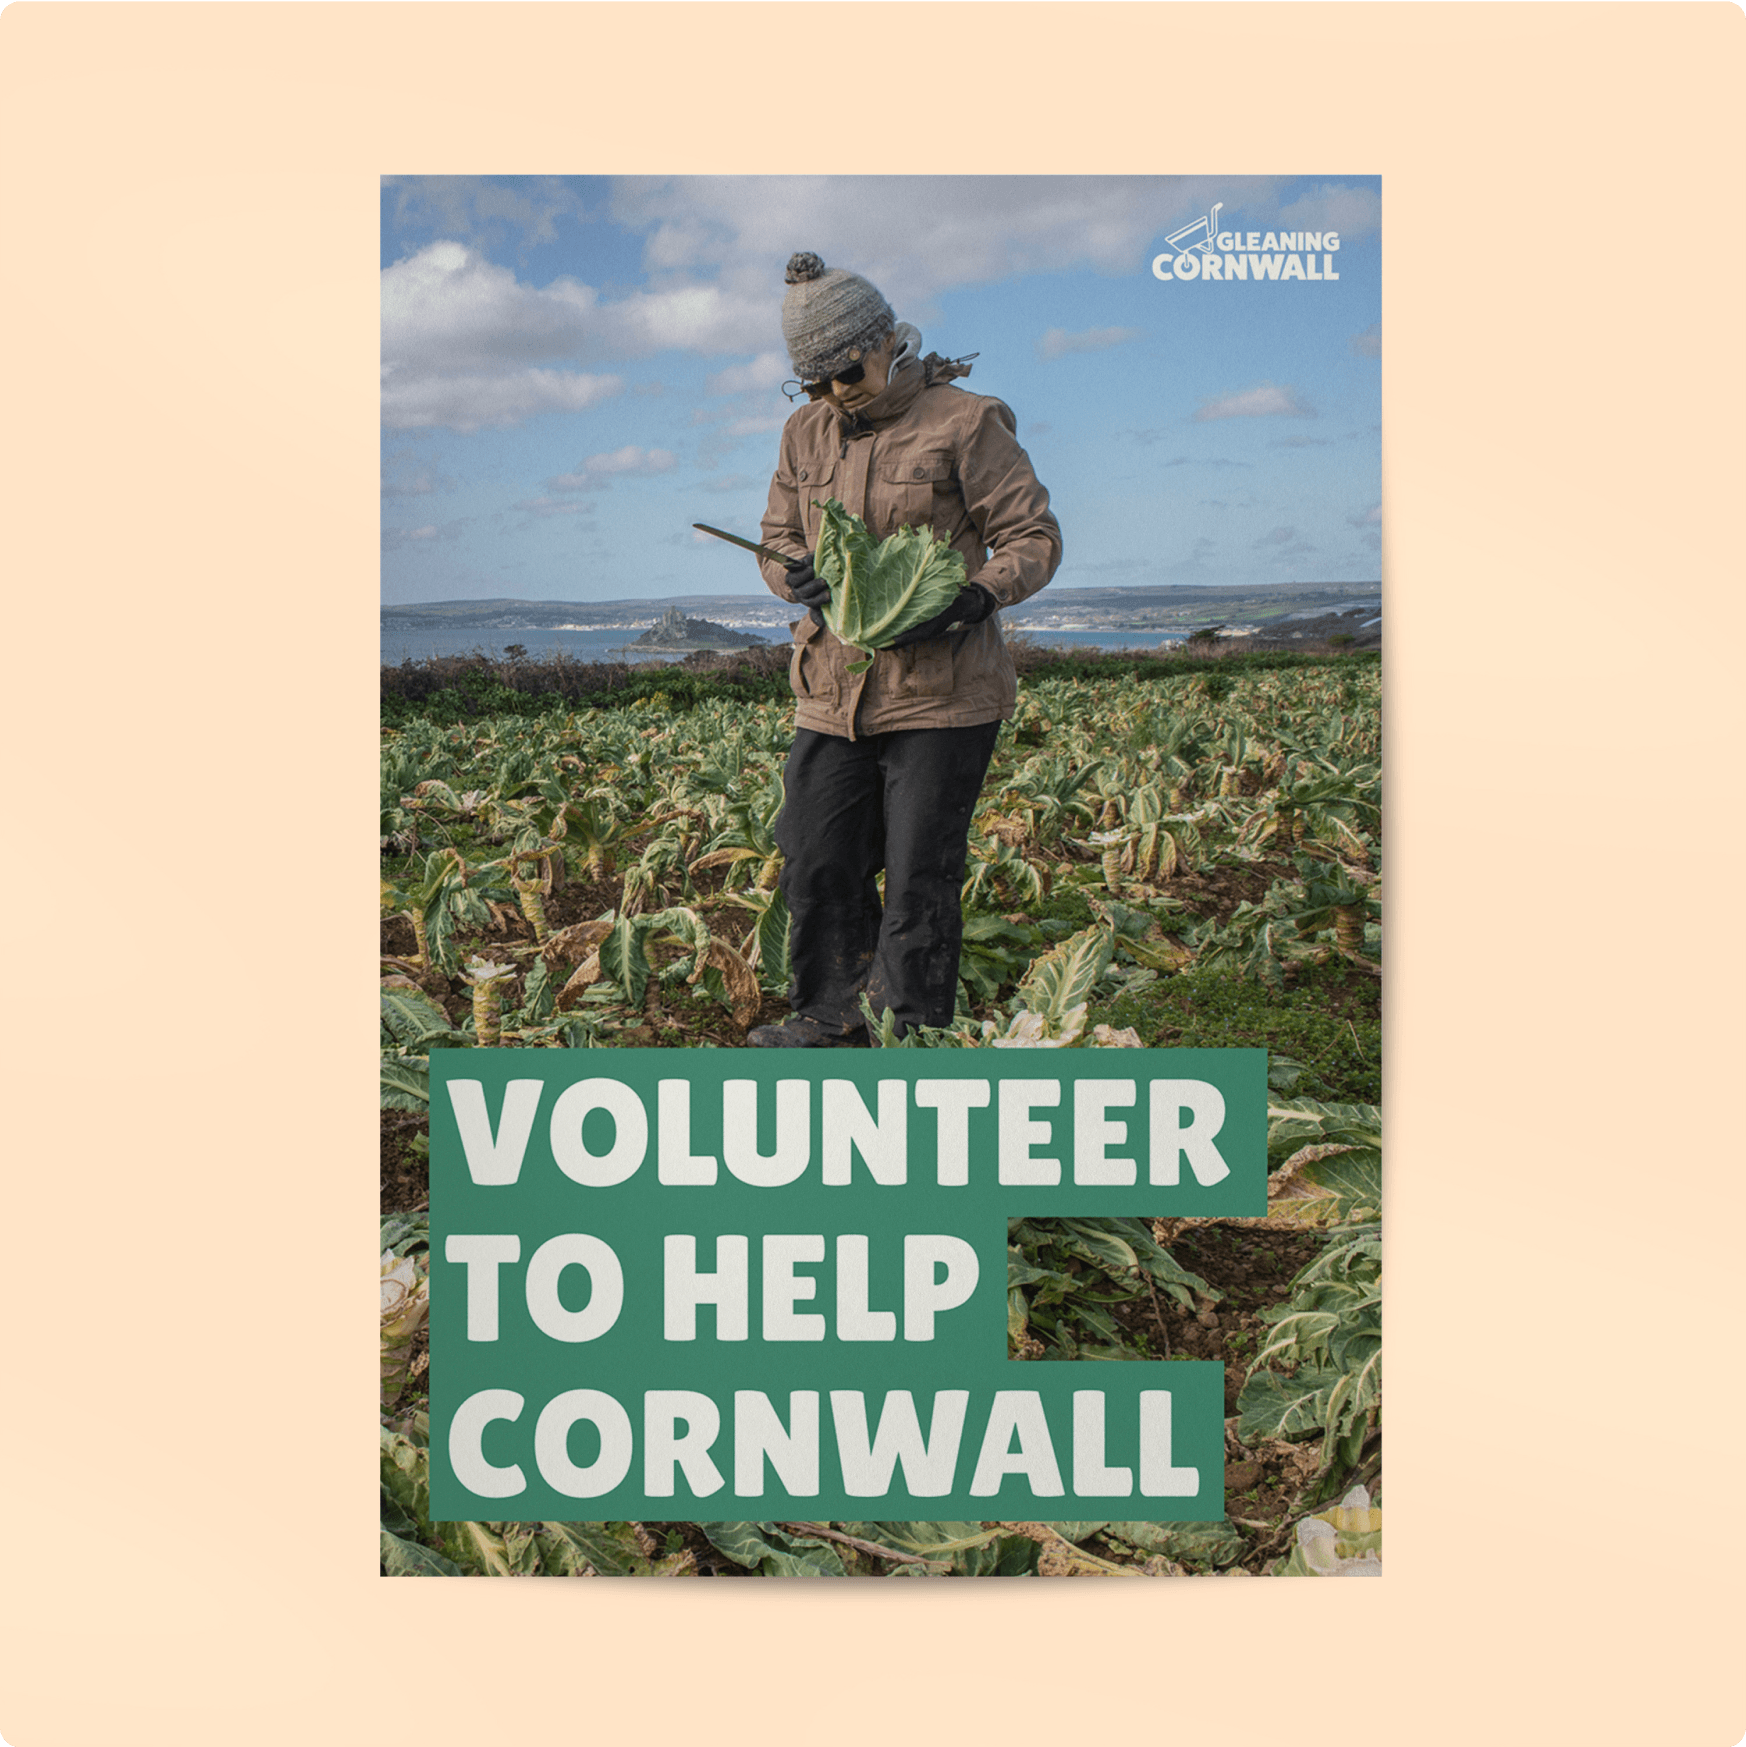 Gleaning Cornwall volunteer poster